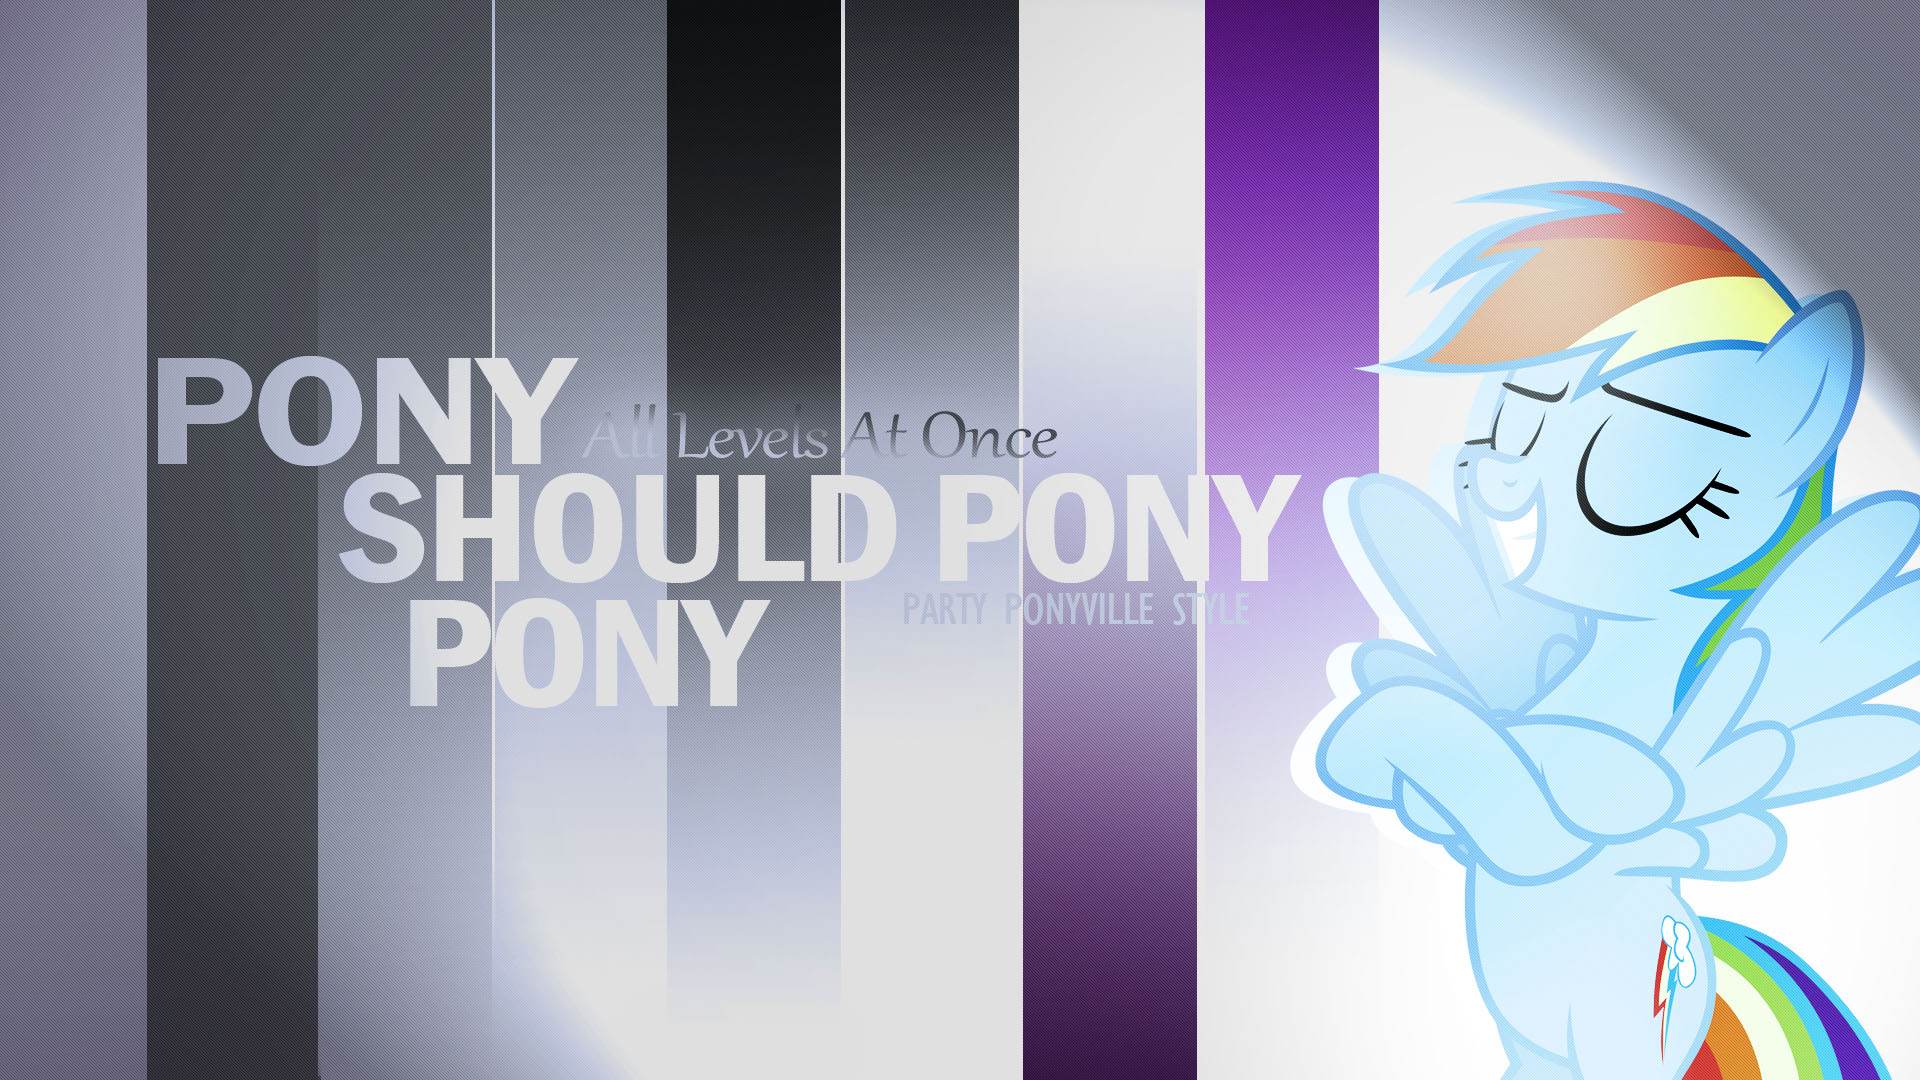 Pony Should Pony Pony (Tribute) by Austiniousi and Xtrl